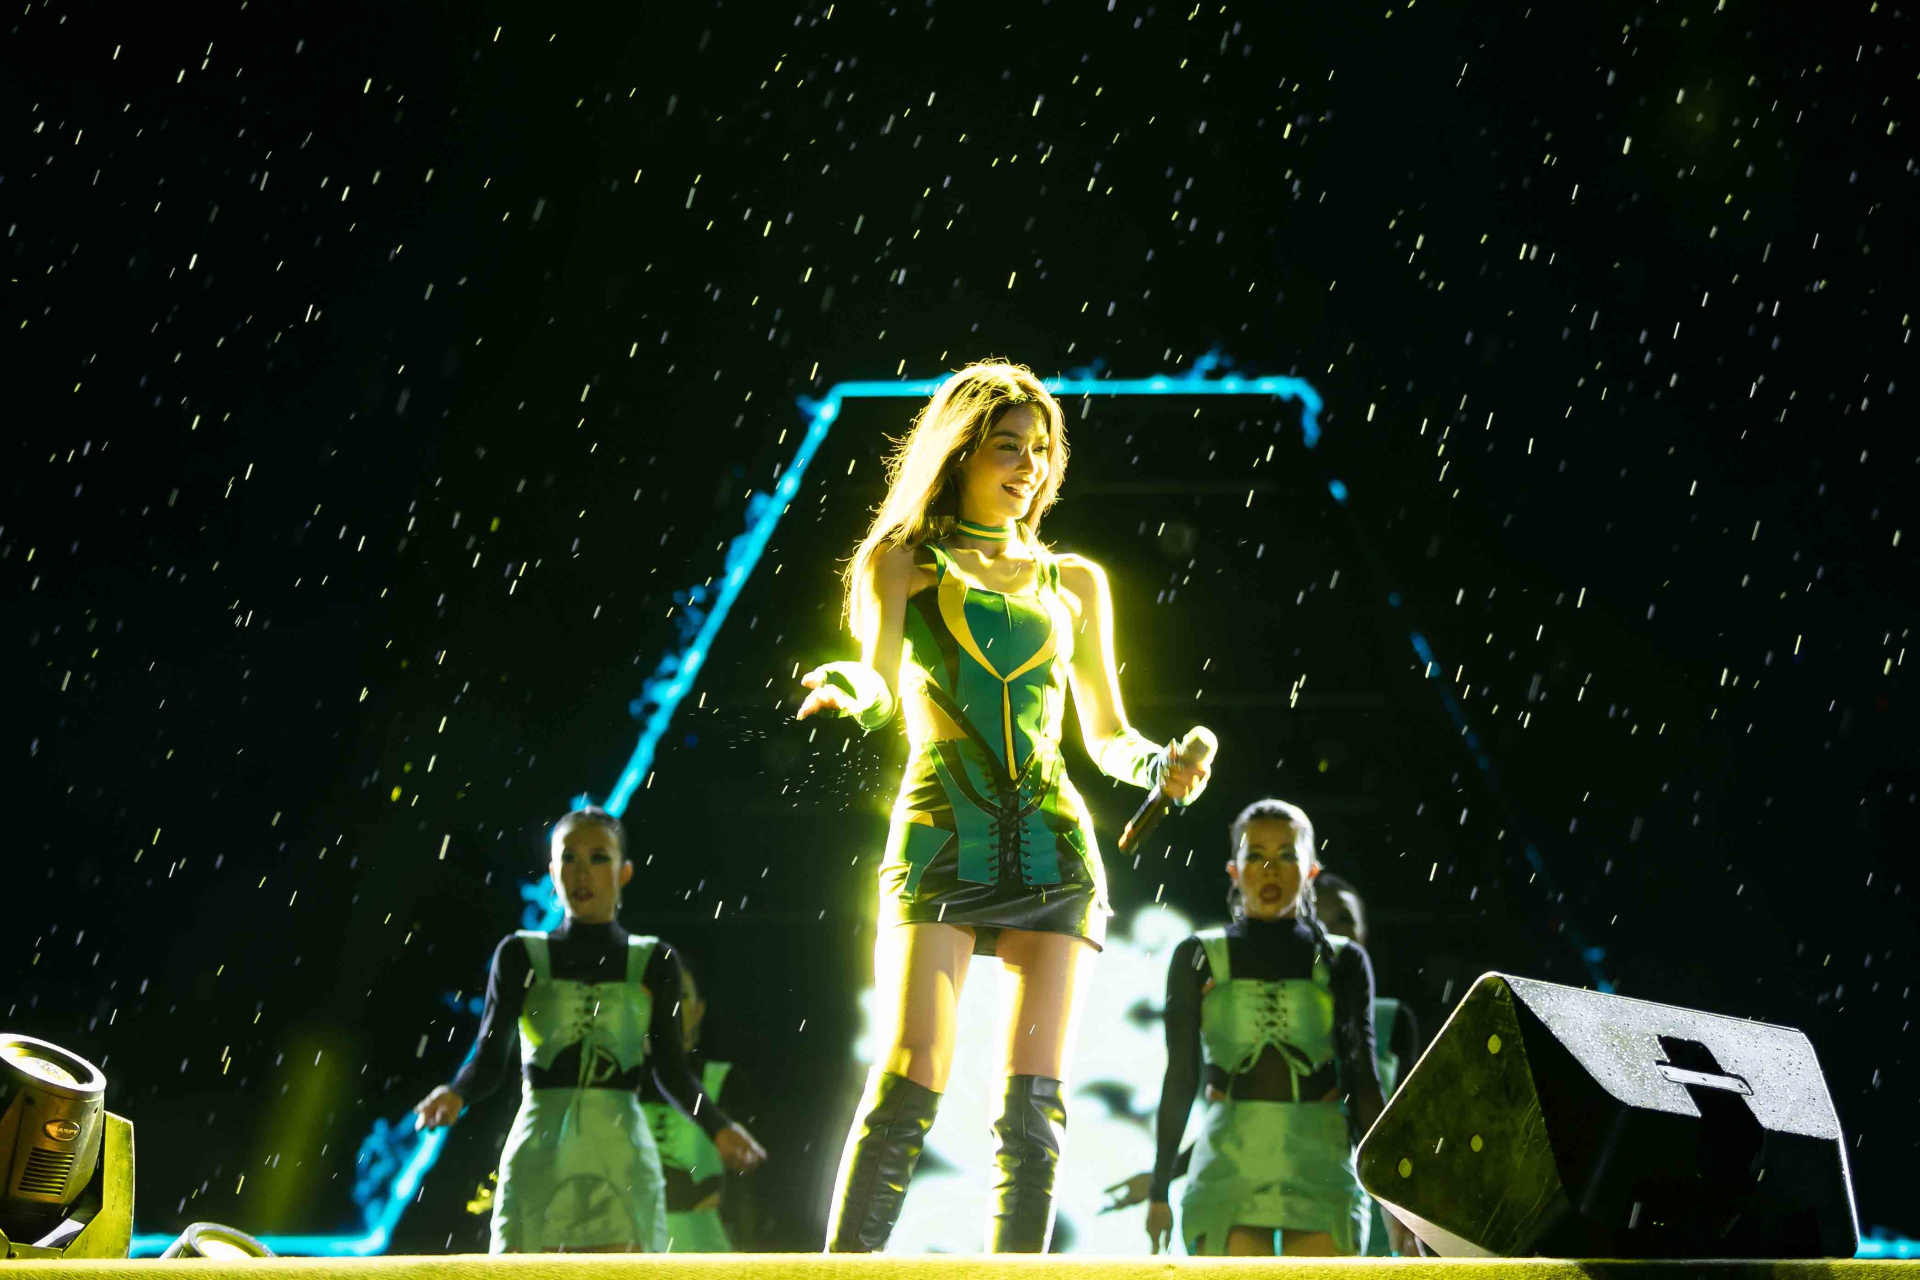 Bất chấp trời mưa ngày càng lớn, Lona vẫn giữ được thần thái tự tin, năng lượng trong xuyên suốt phần biểu diễn.